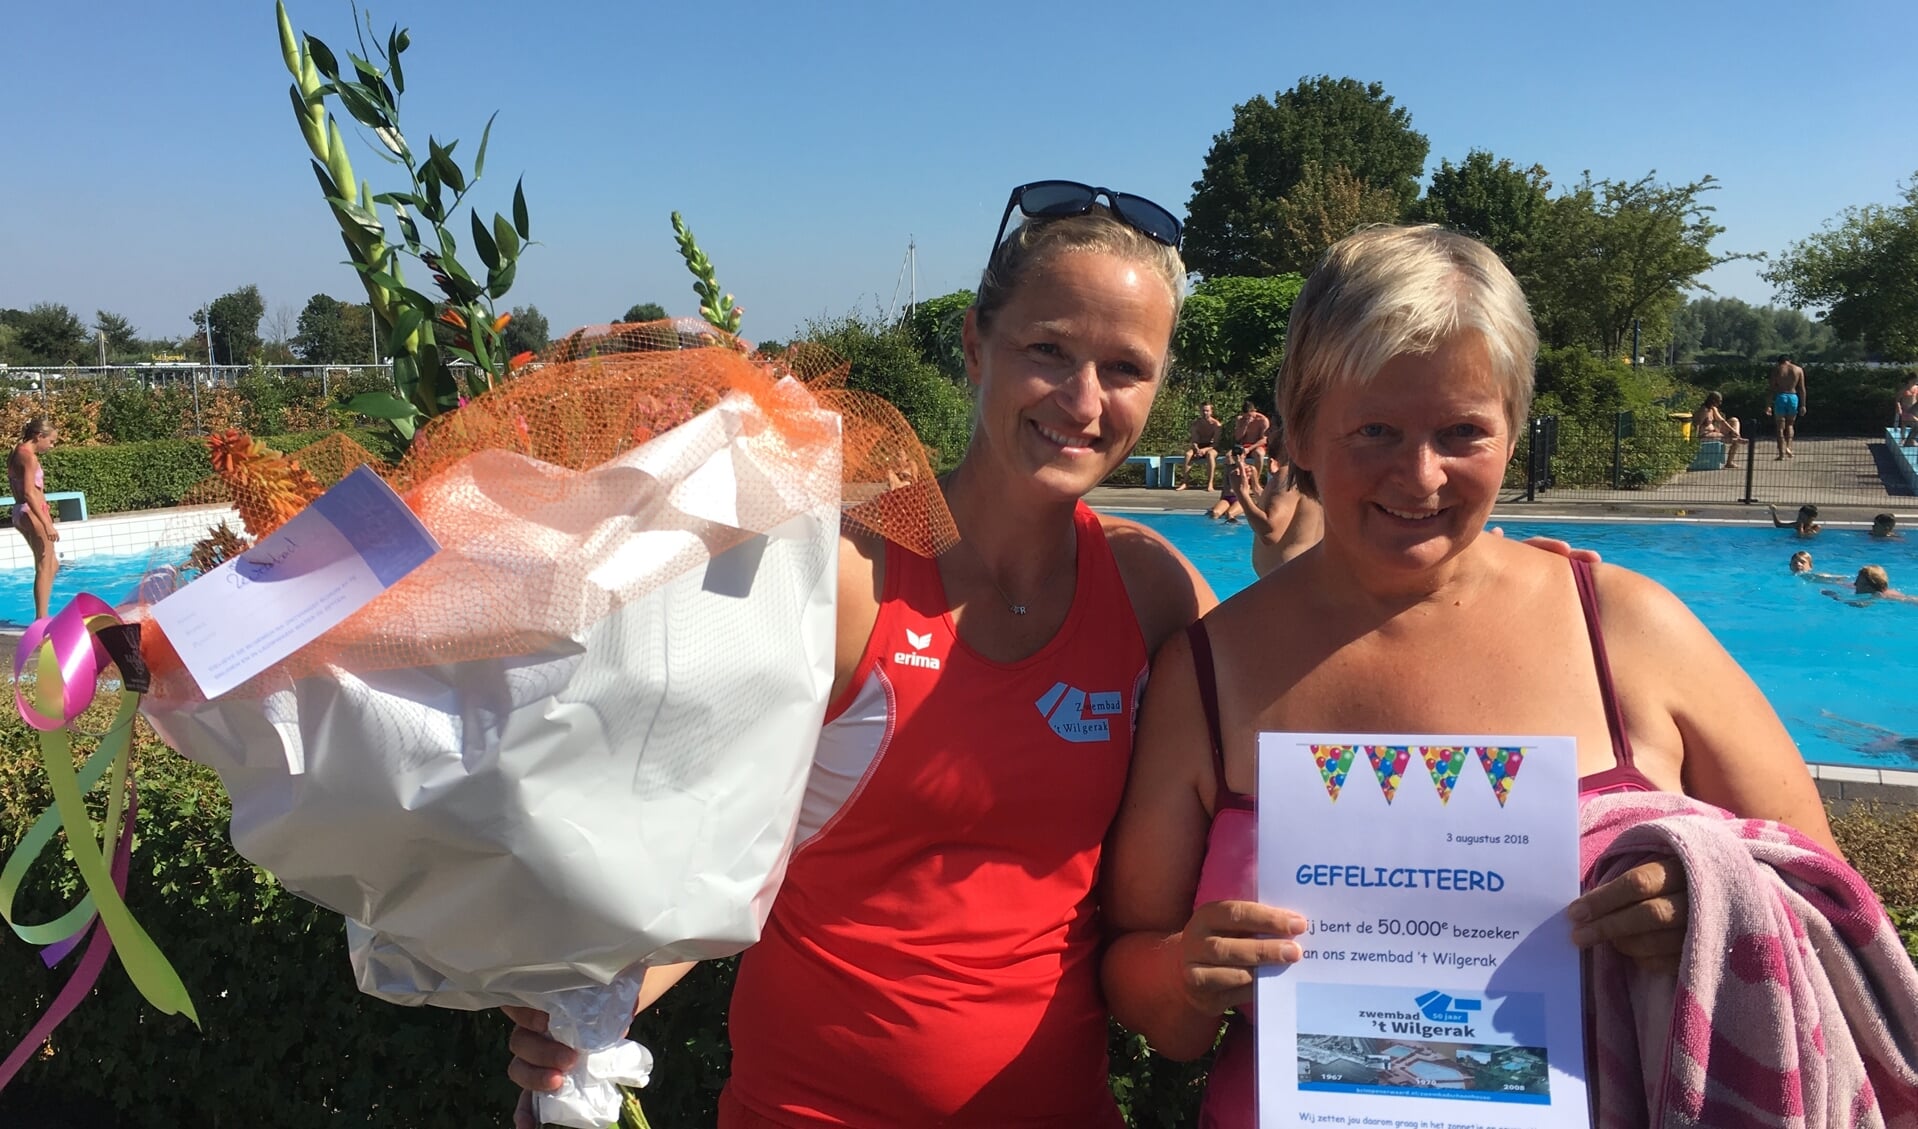 Zwembad ’t Wilgerak in Schoonhoven verwelkomde de 50.000e bezoeker van dit zwemseizoen: mevrouw M. van der Meer-Bunnik.